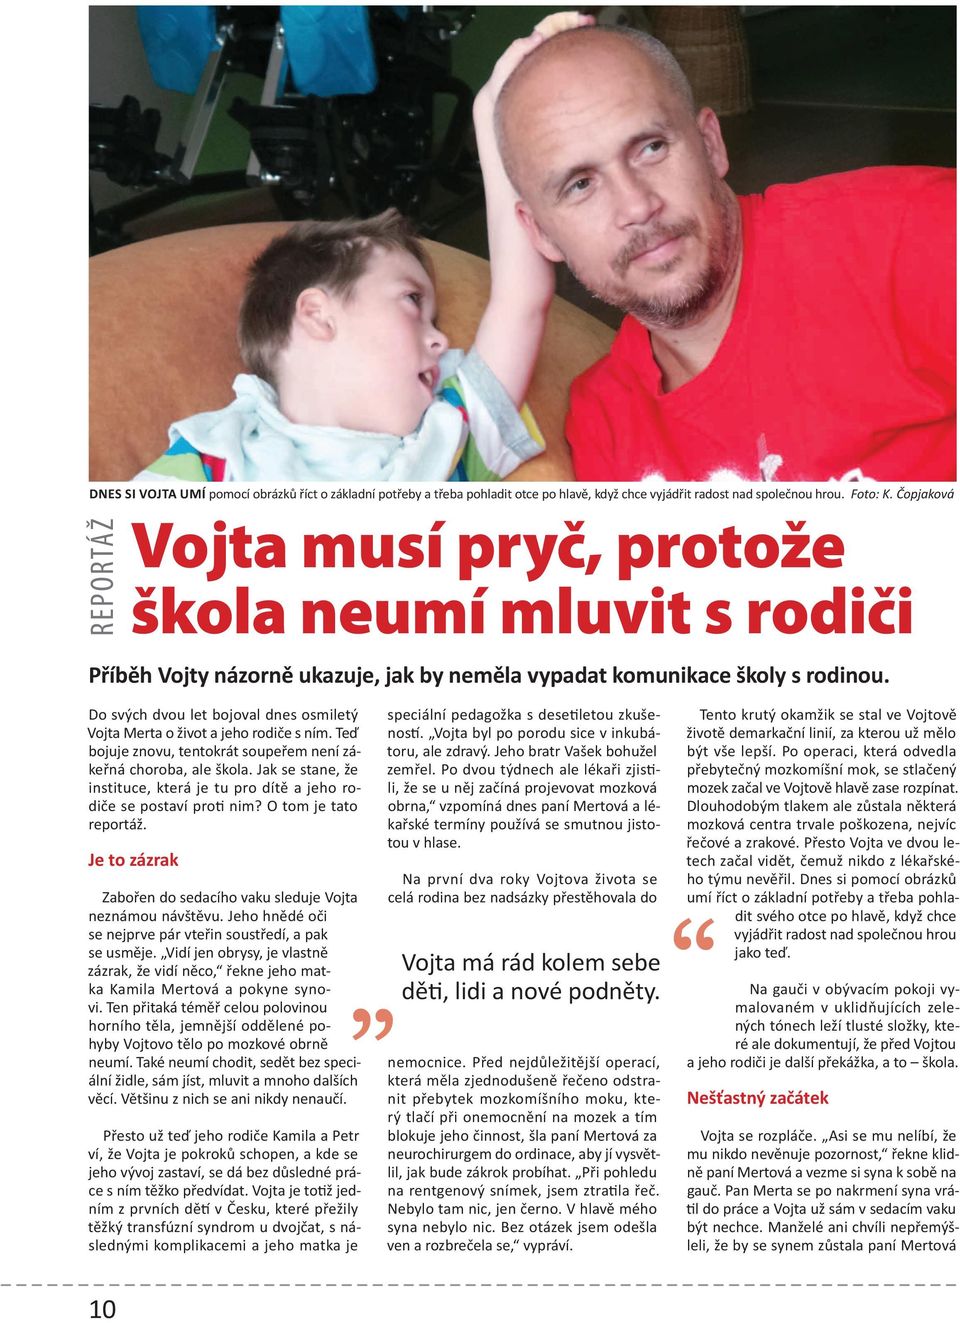 Do svých dvou let bojoval dnes osmiletý Vojta Merta o život a jeho rodiče s ním. Teď bojuje znovu, tentokrát soupeřem není zákeřná choroba, ale škola.